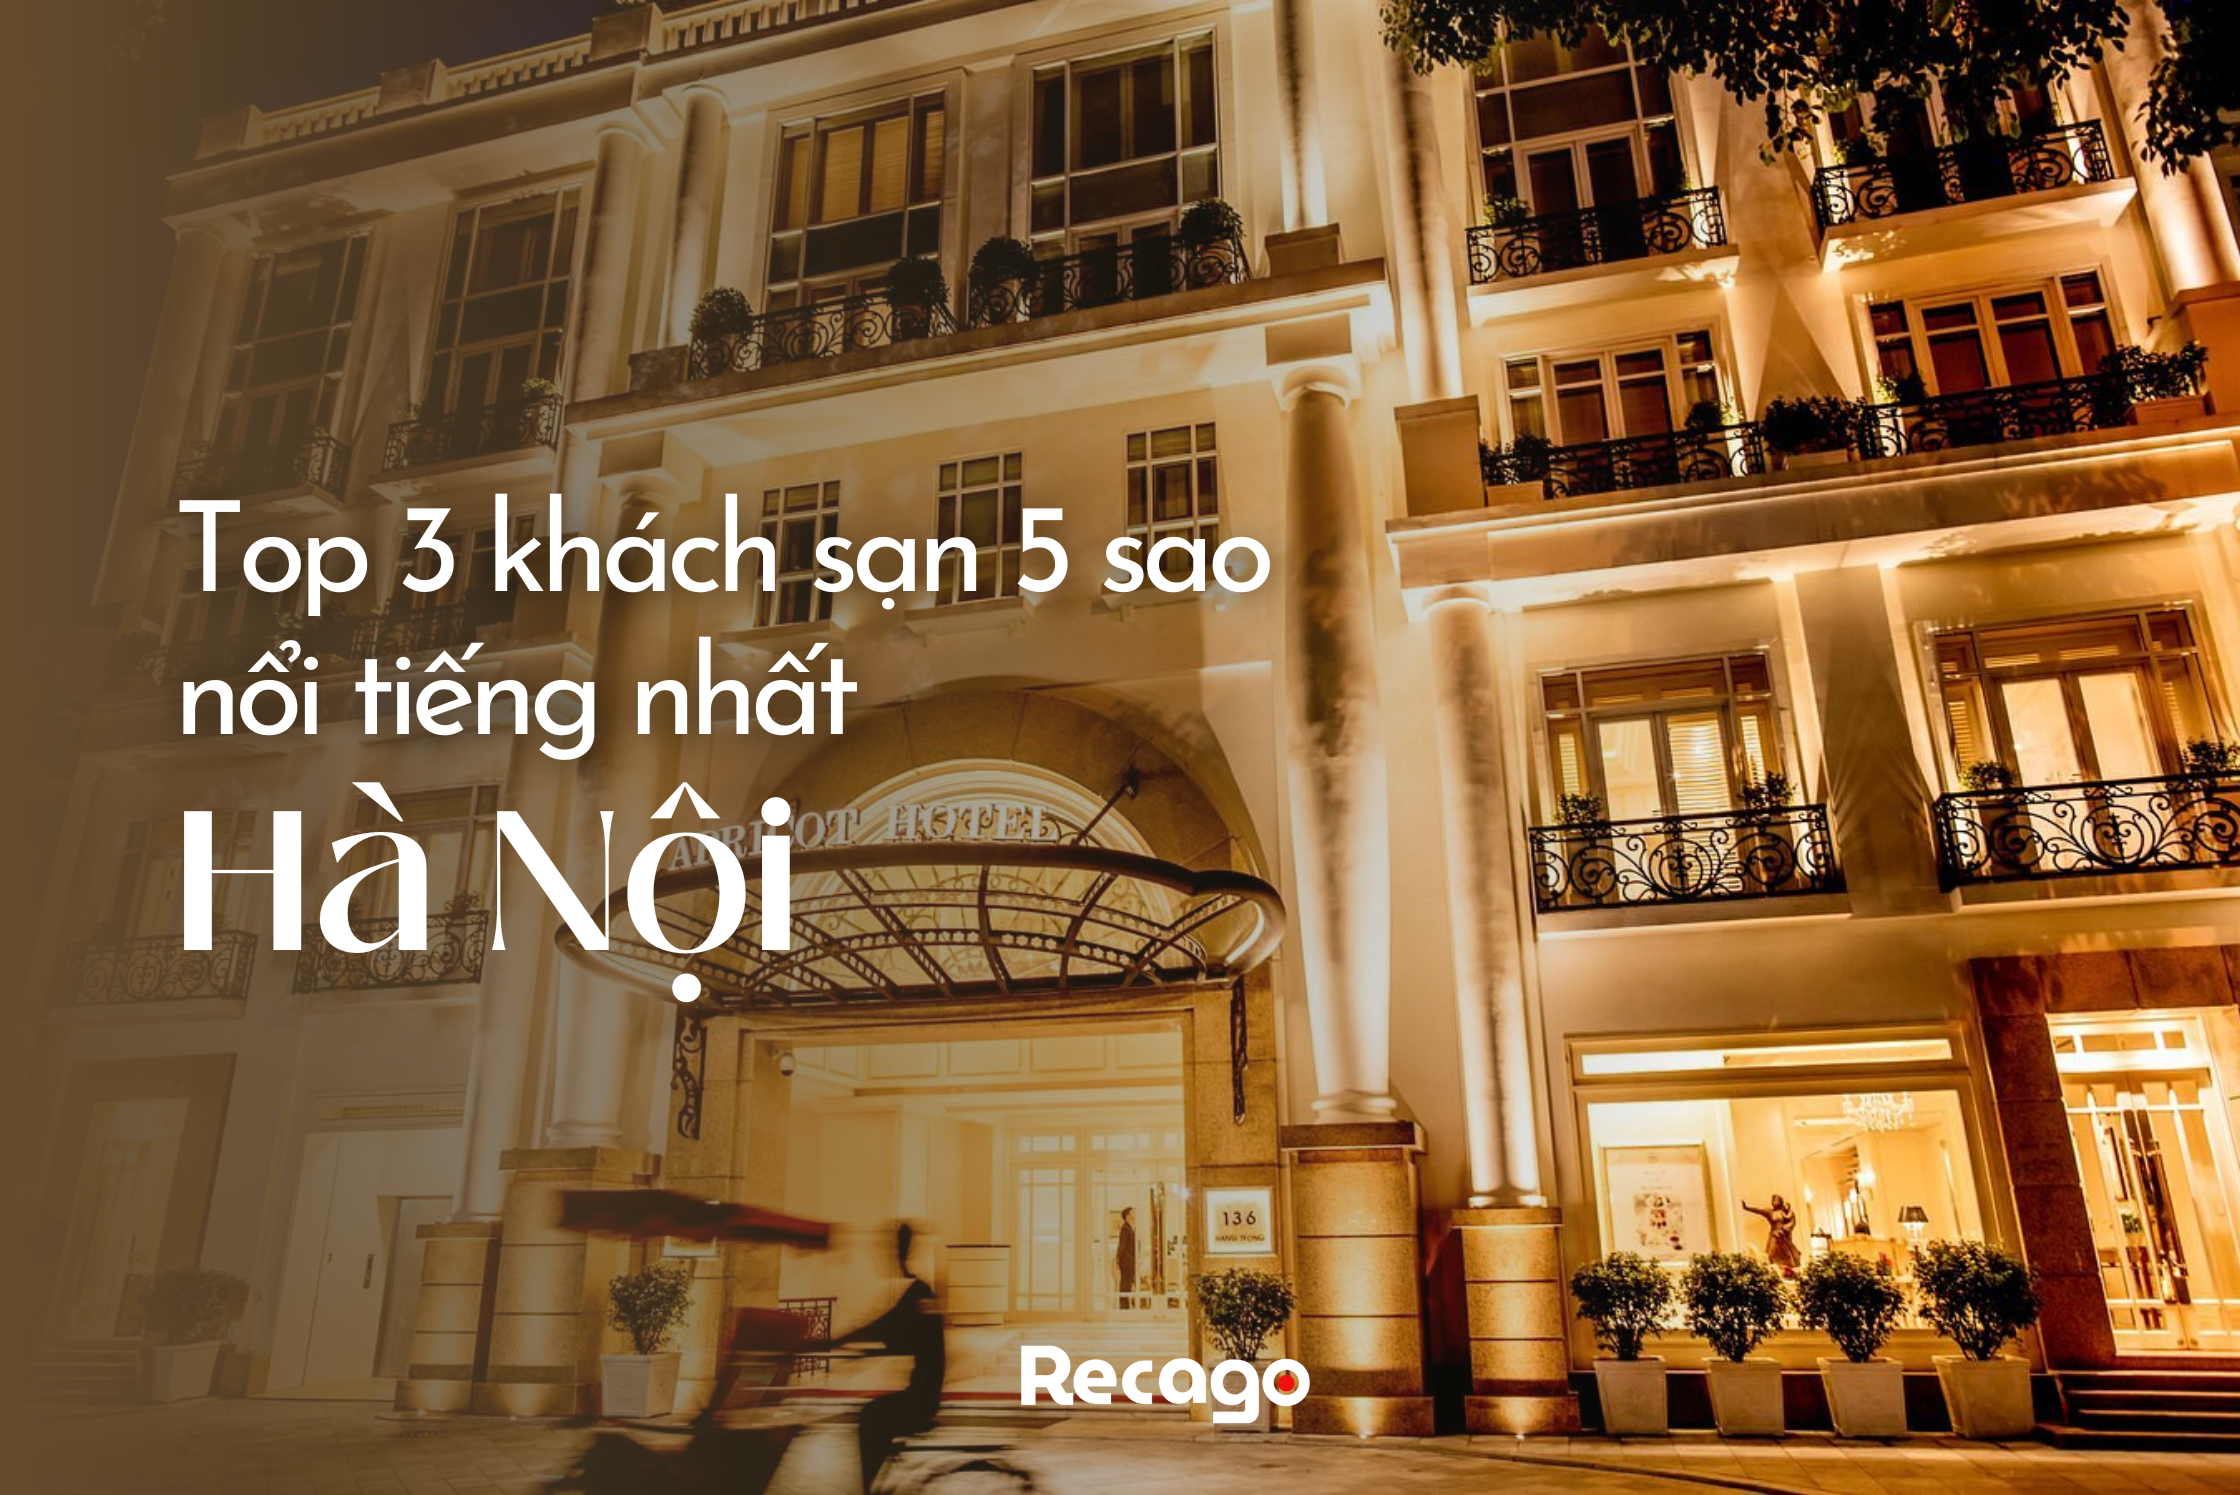 Top 3 khách sạn 5 sao nổi tiếng nhất Hà Nội